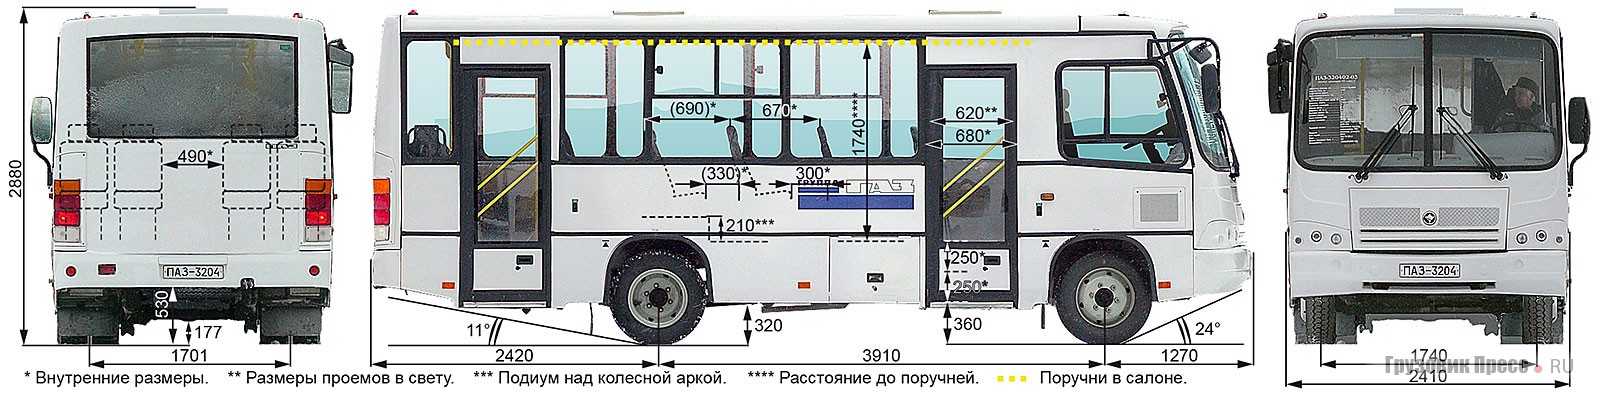 Технические характеристики автобуса паз. ПАЗ 320402 габариты. ПАЗ 320412 габариты. Габариты ПАЗ 3205. Габариты автобуса ПАЗ-320412-04.